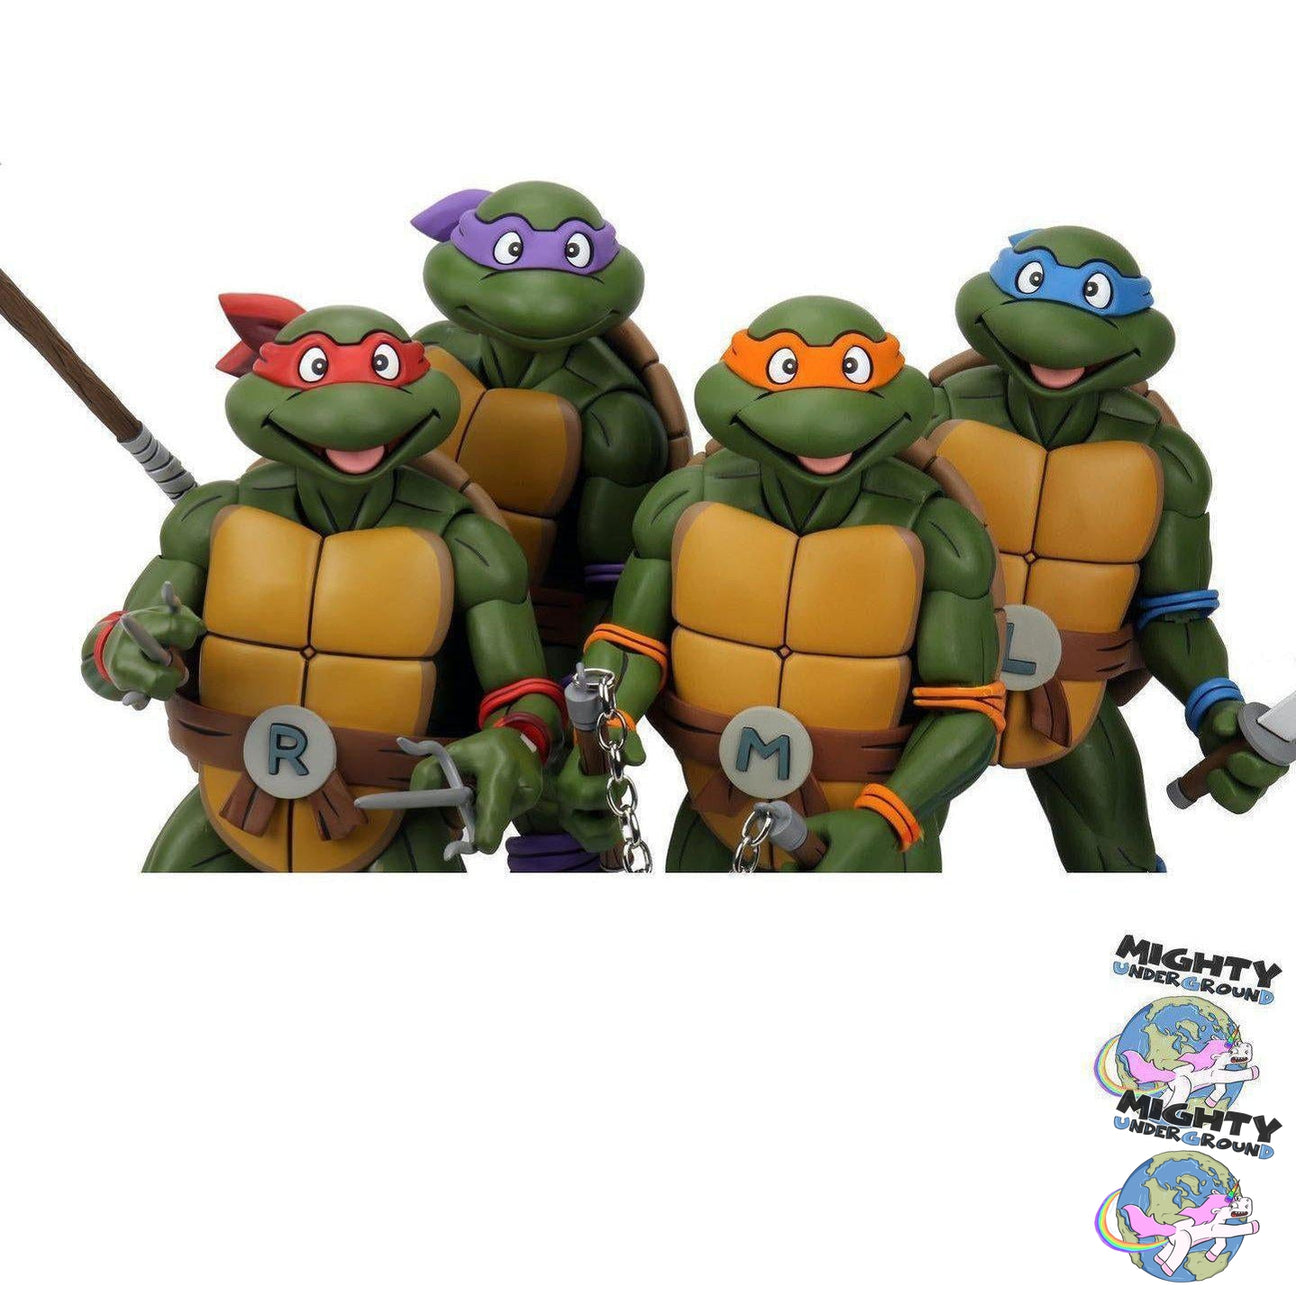 TMNT: Super Size Donatello 1/4 VORBESTELLUNG!-Actionfiguren-NECA-Mighty Underground